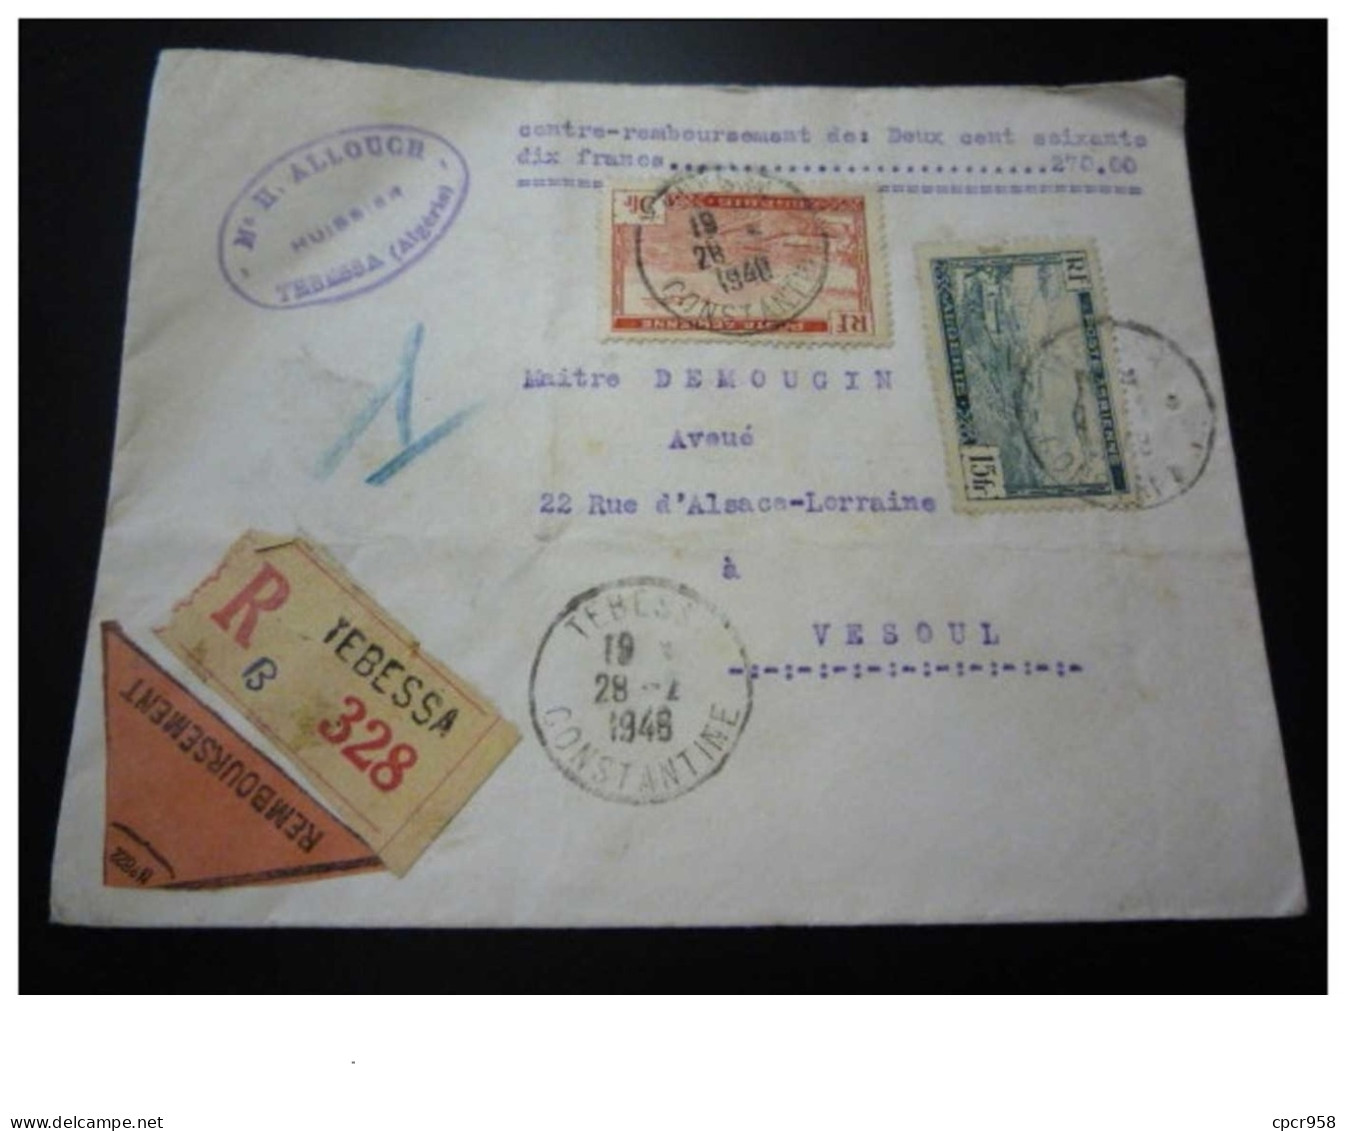 TIMBRE.n°29549.ALGERIE.CONTRE REMBOURSEMENT DE LA SOMME DE 270 FRANCS.1948.RECOMMANDE.POUR VESOUL - Cartas & Documentos